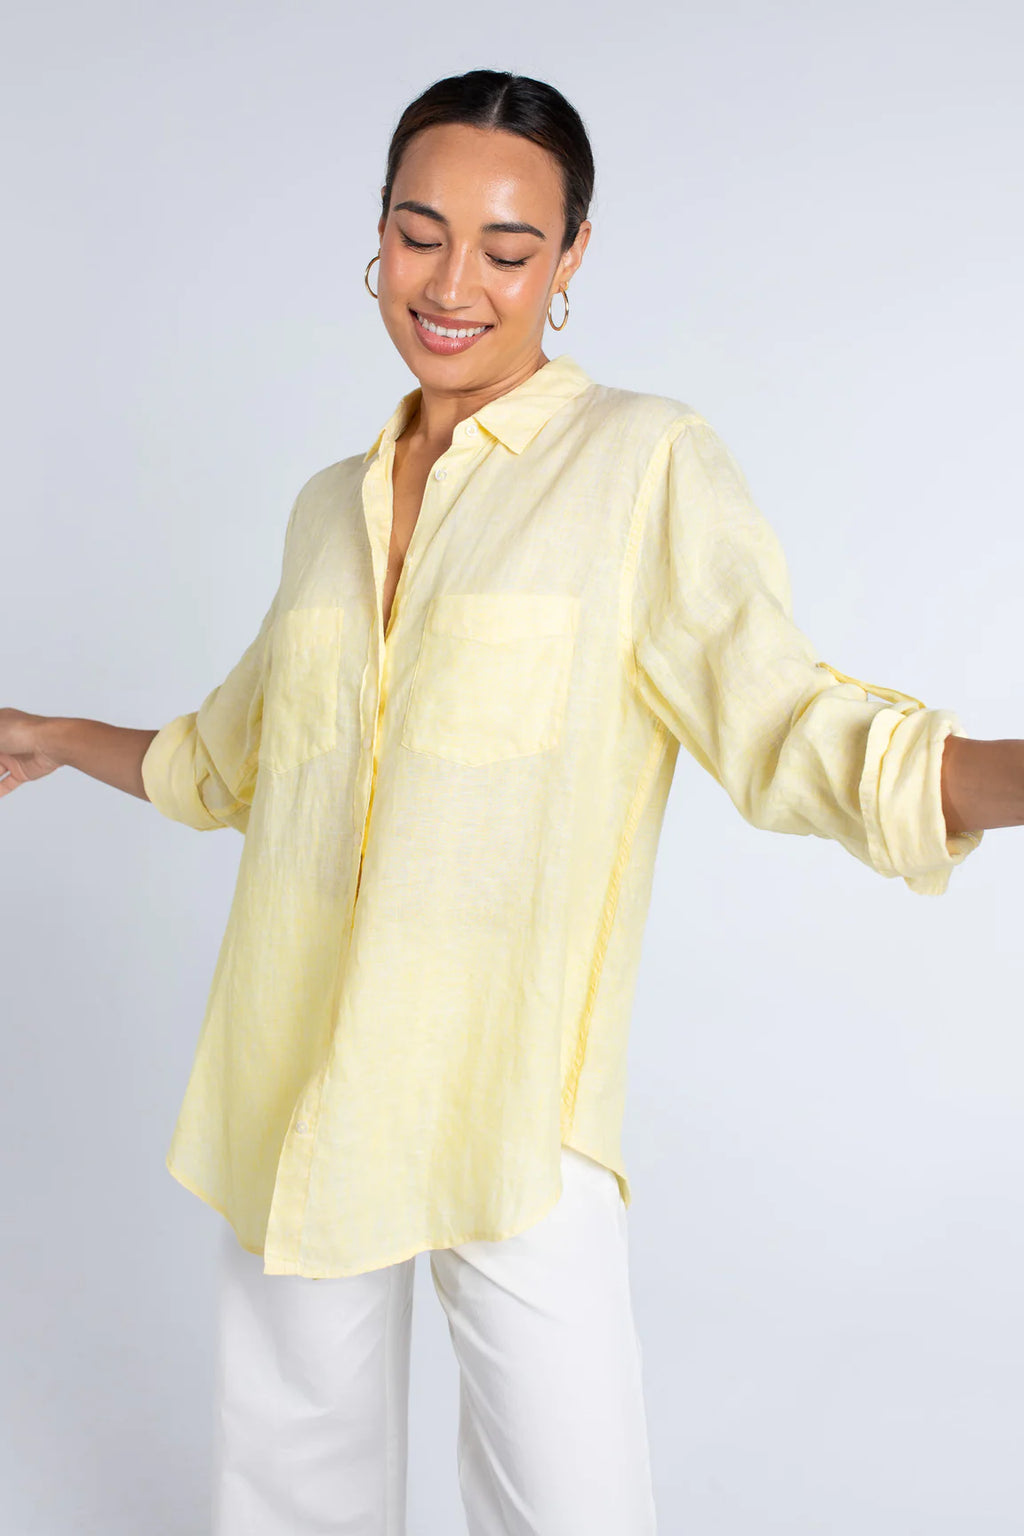 Hut Clothing Boyfriend Linen Shirt Sunshine Yellow Chambray